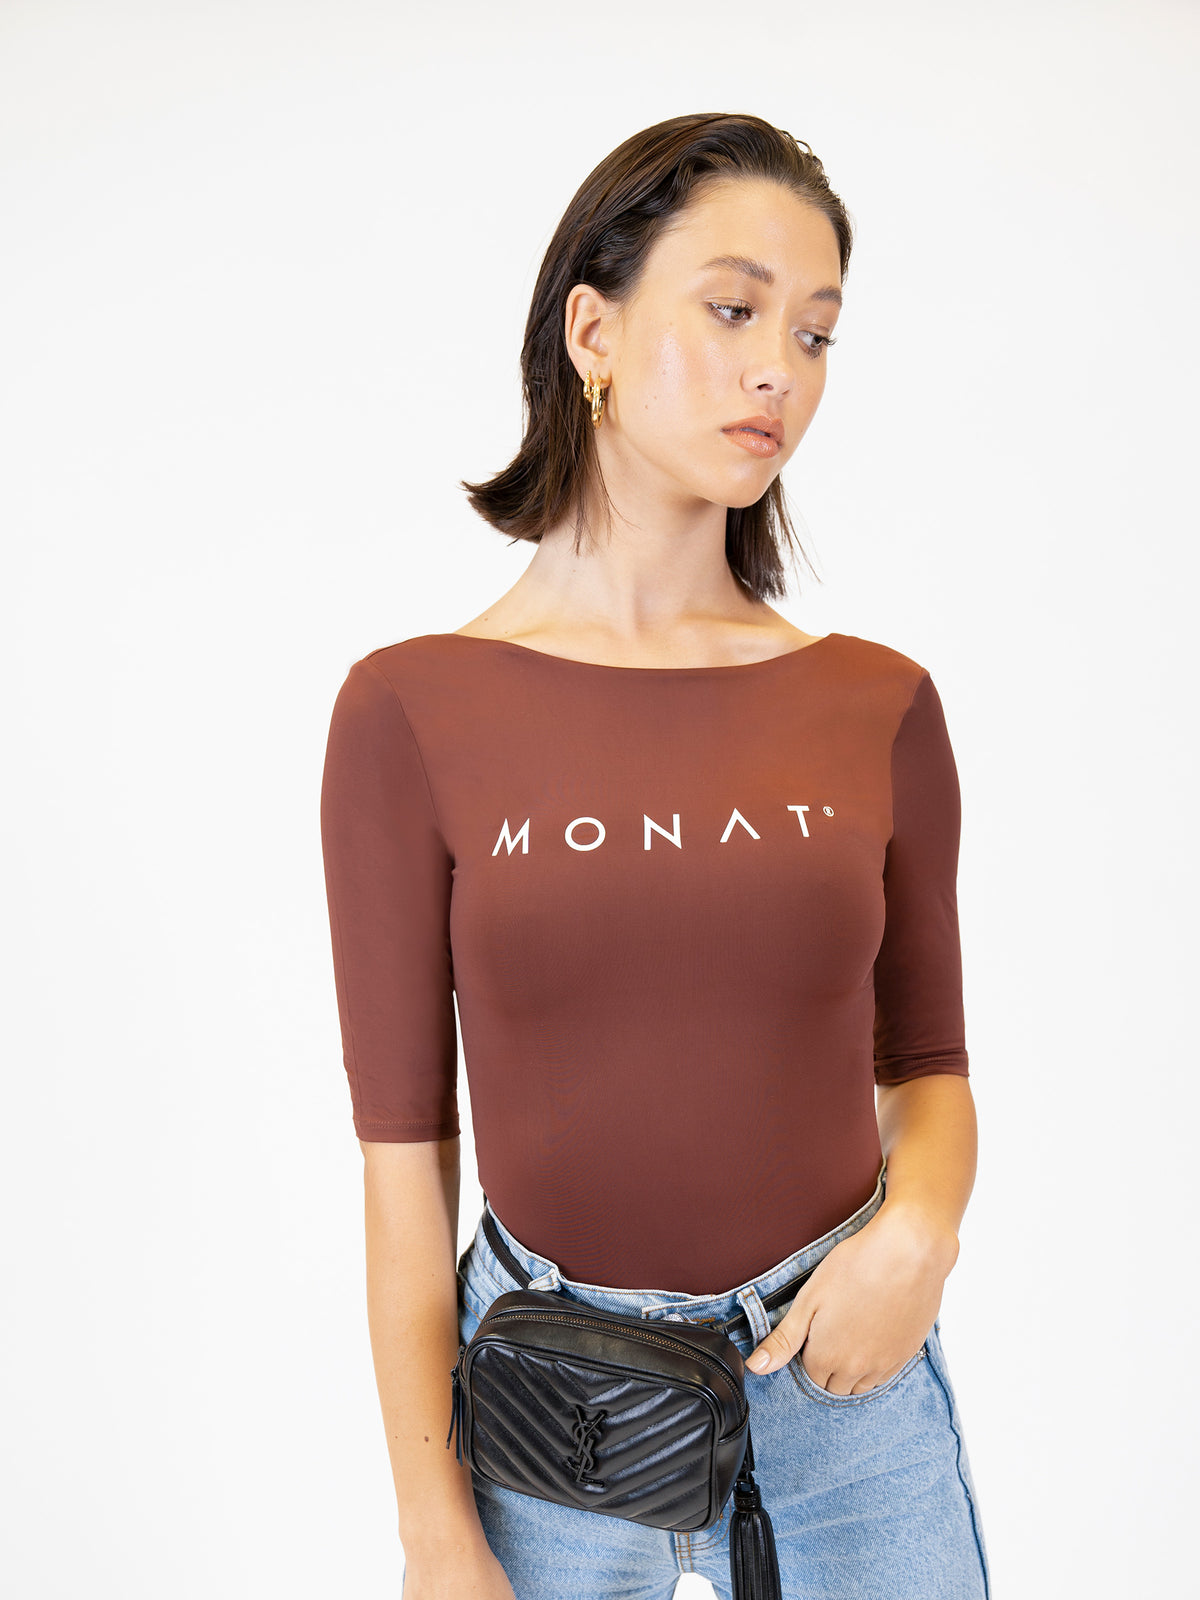 MONAT 3/4 Sleeve Bodysuit- Cocoa